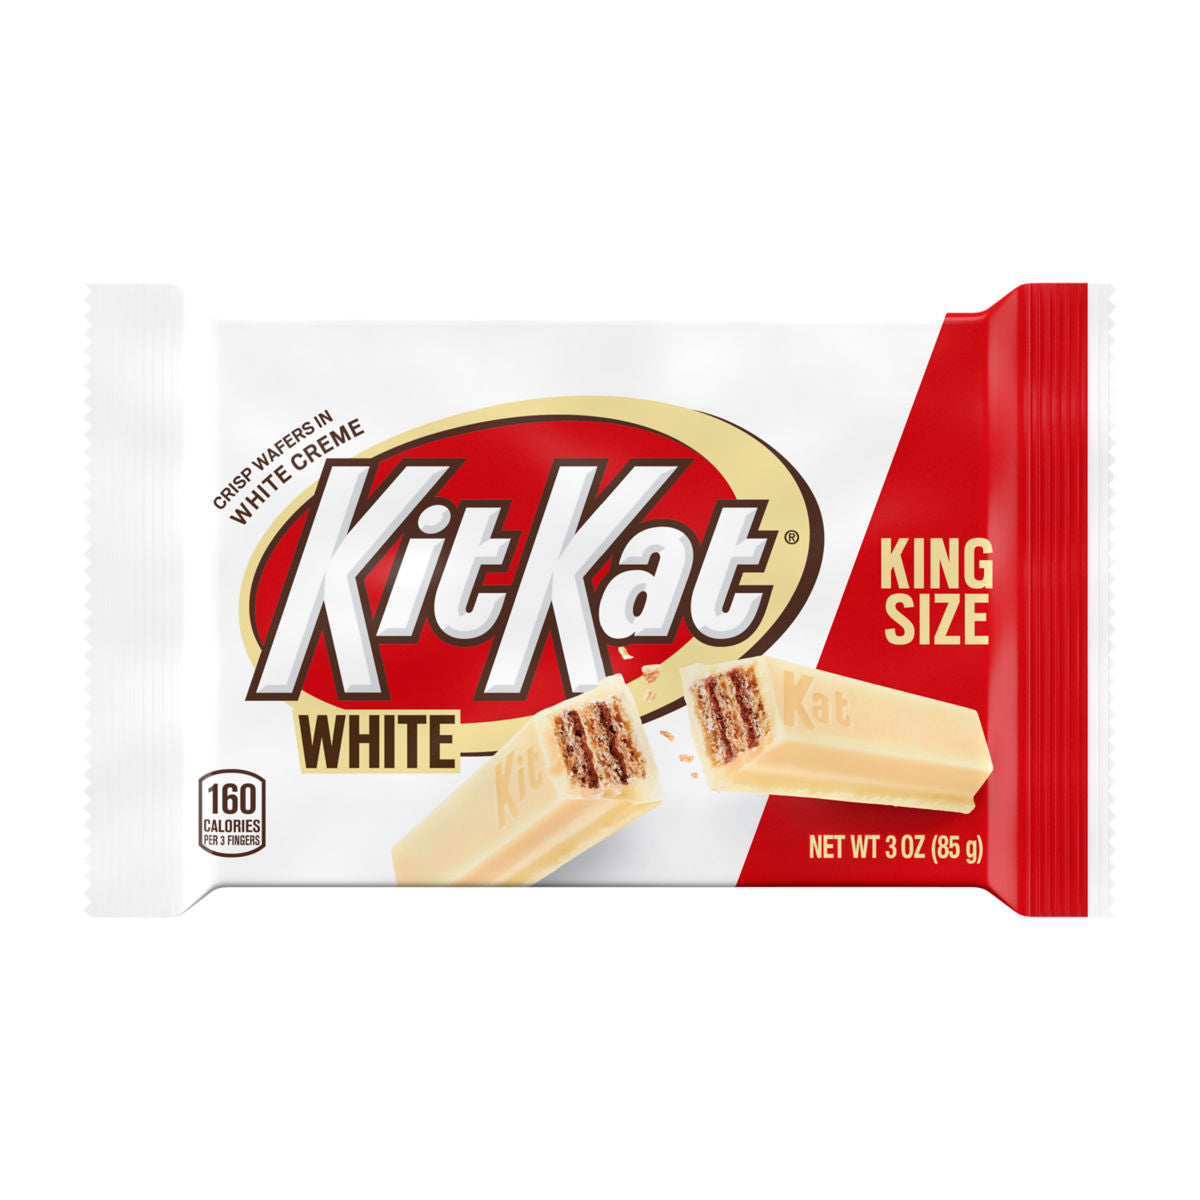 Kit Kat White King Size 3oz 24ct